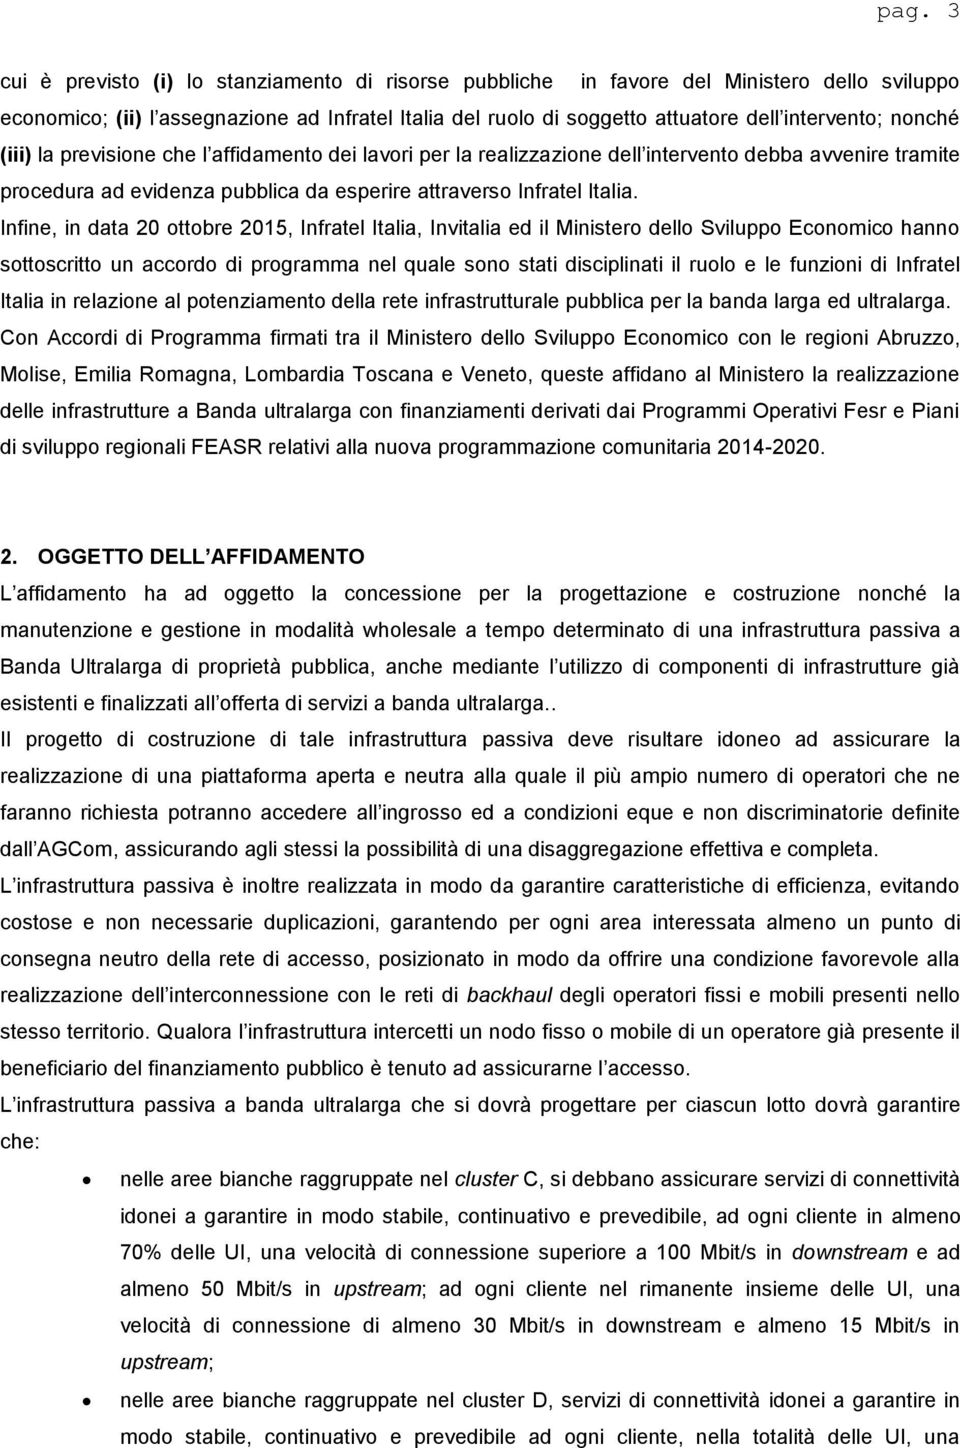 Infine, in data 20 ottobre 2015, Infratel Italia, Invitalia ed il Ministero dello Sviluppo Economico hanno sottoscritto un accordo di programma nel quale sono stati disciplinati il ruolo e le